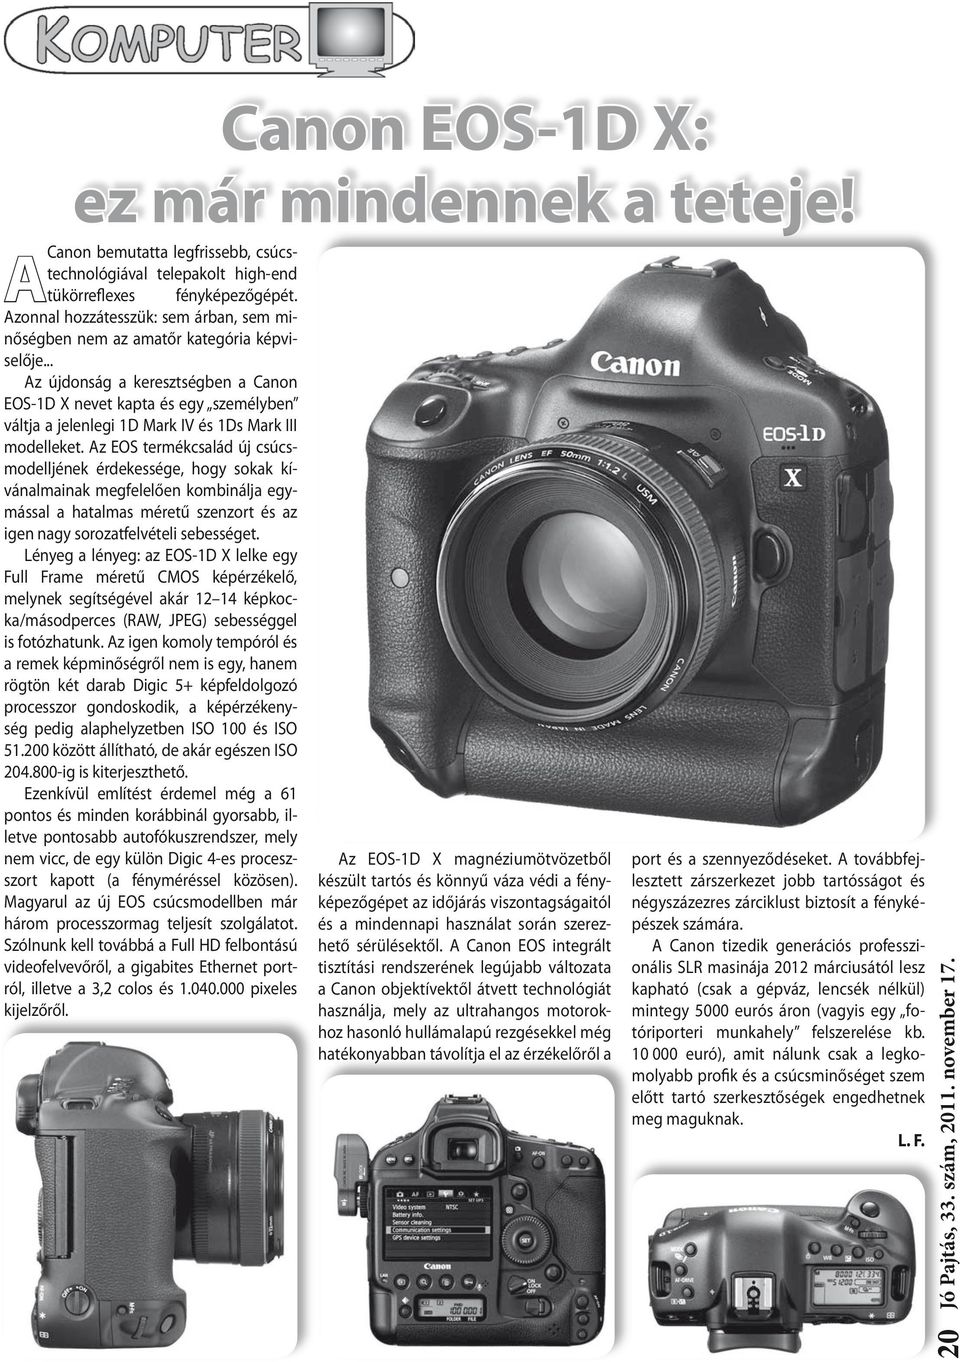 .. Az újdonság a keresztségben a Canon EOS-1D X nevet kapta és egy személyben váltja a jelenlegi 1D Mark IV és 1Ds Mark III modelleket.